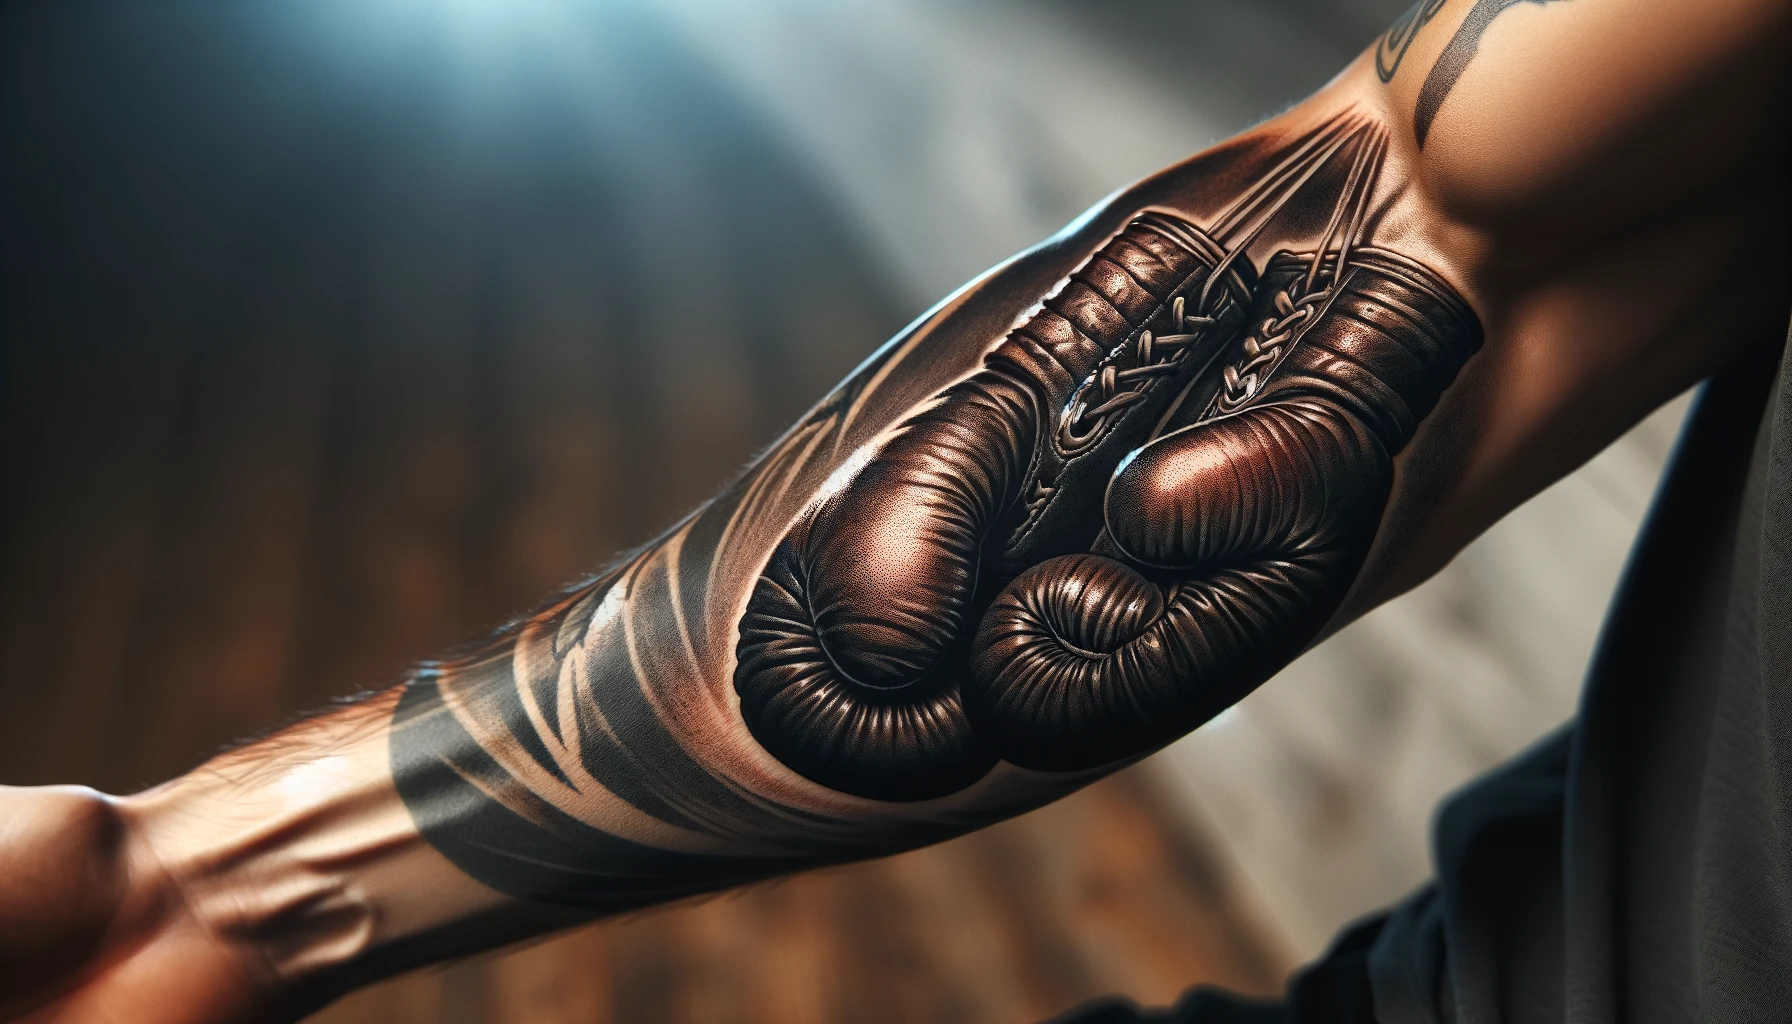 Ramię mężczyzny pokrywa tatuaż przedstawiający parę rękawic bokserskich zwieszonych na sznurze. Detal i głębia barw tatuażu nadają mu realistyczny i trójwymiarowy wygląd